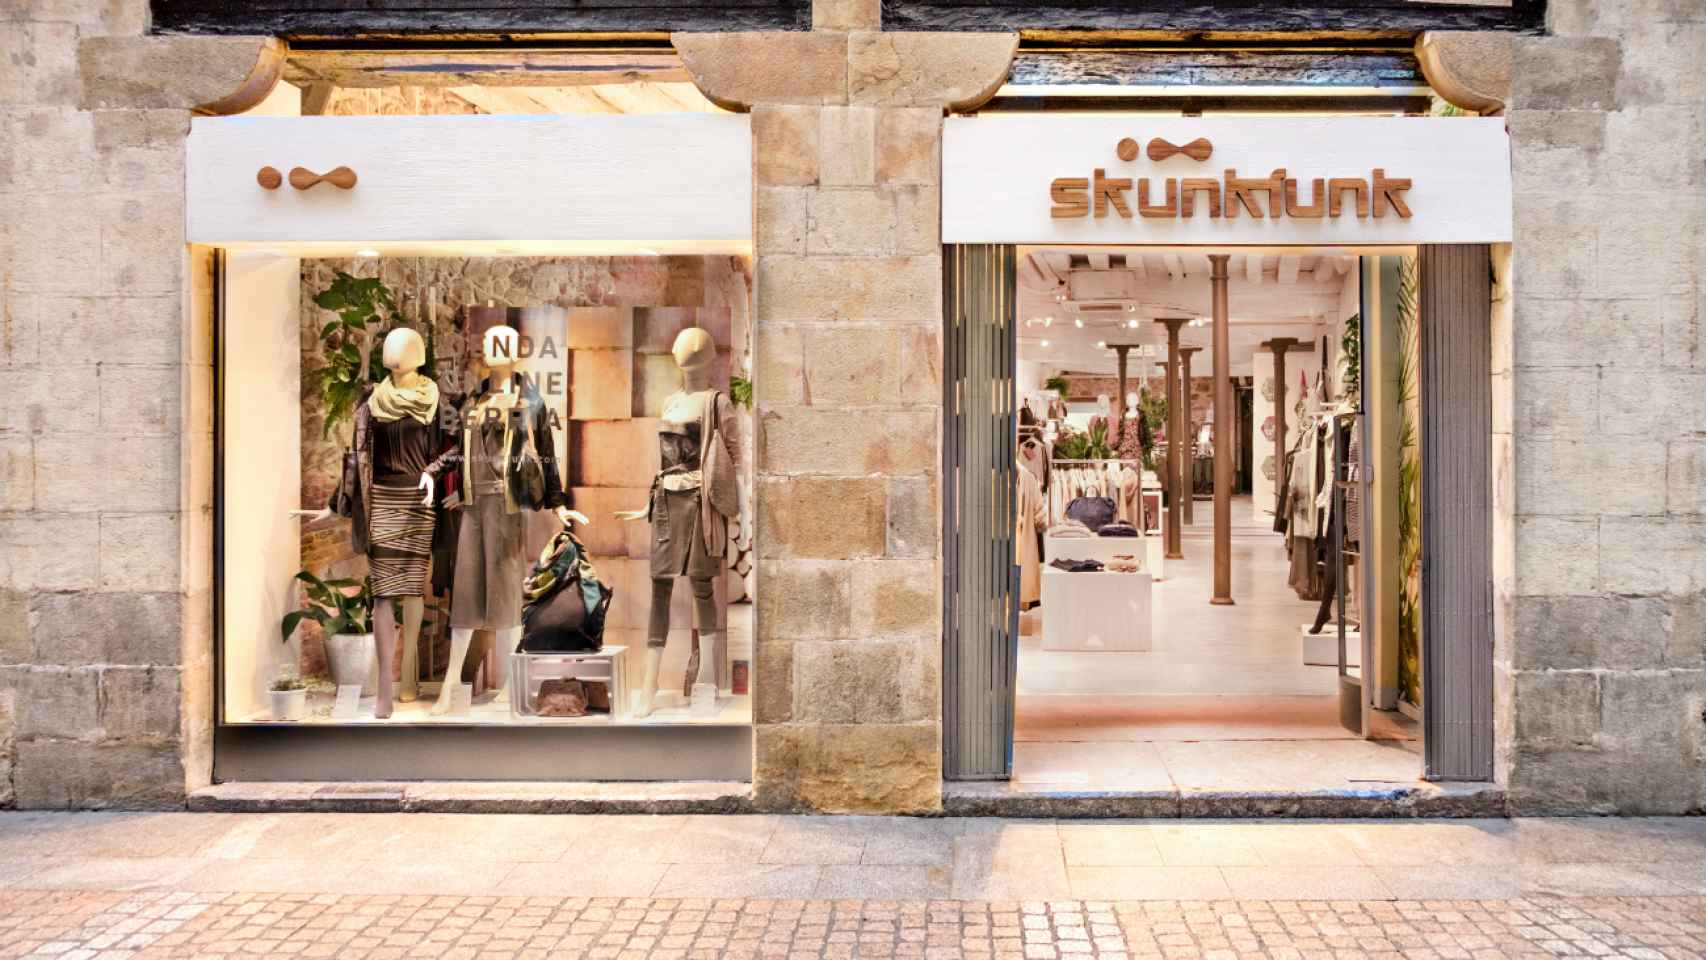 La tienda de Skunkfunk en el centro de Bilbao.